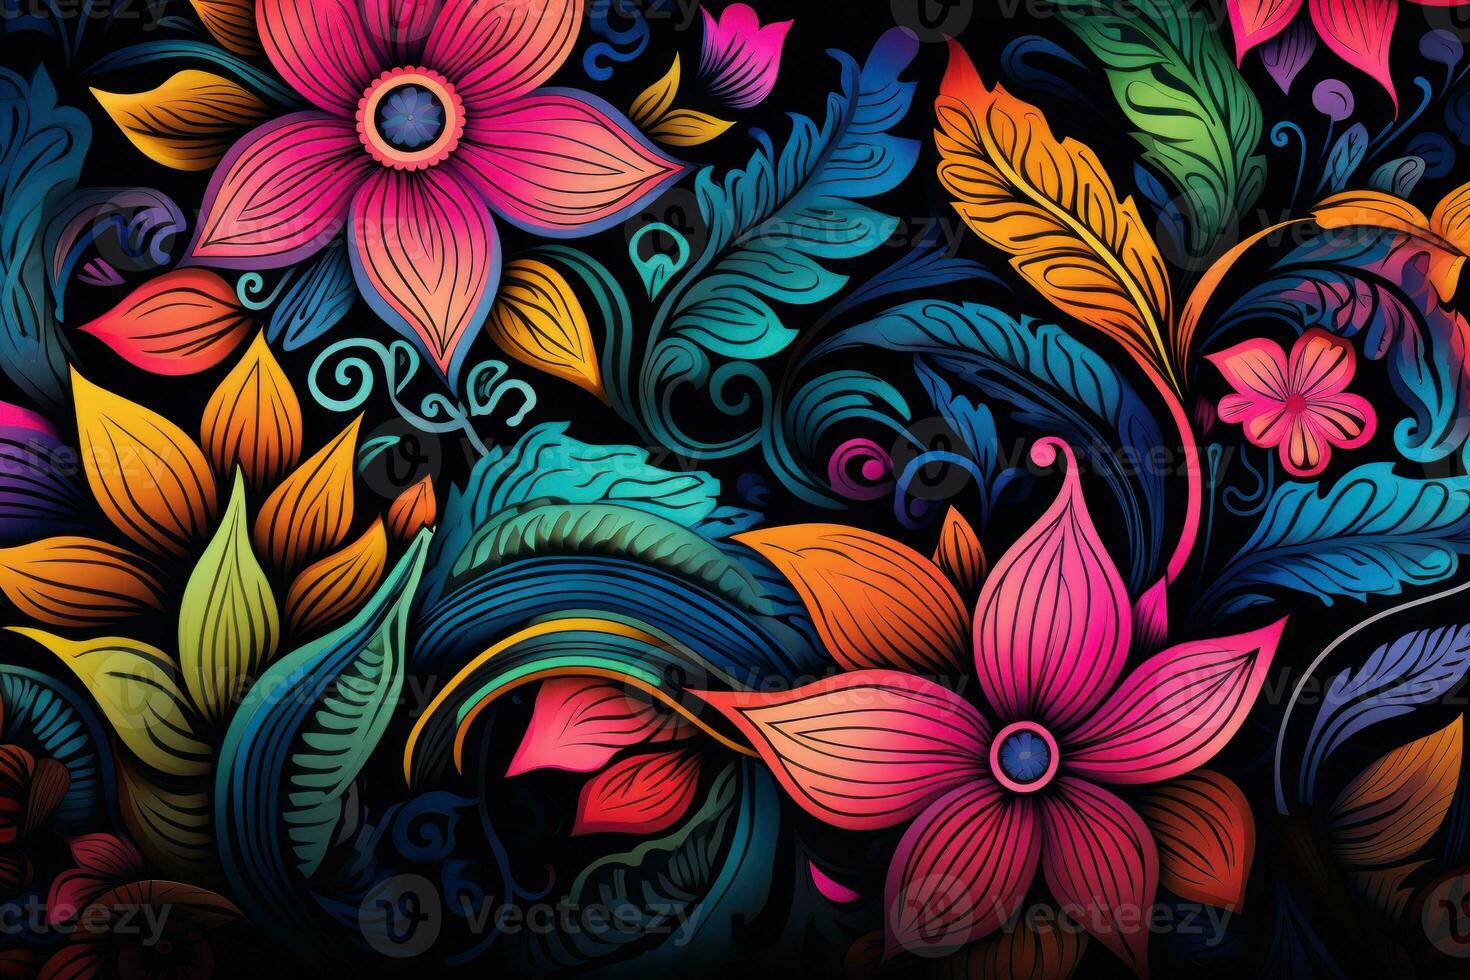 Drawn floral pattern photo